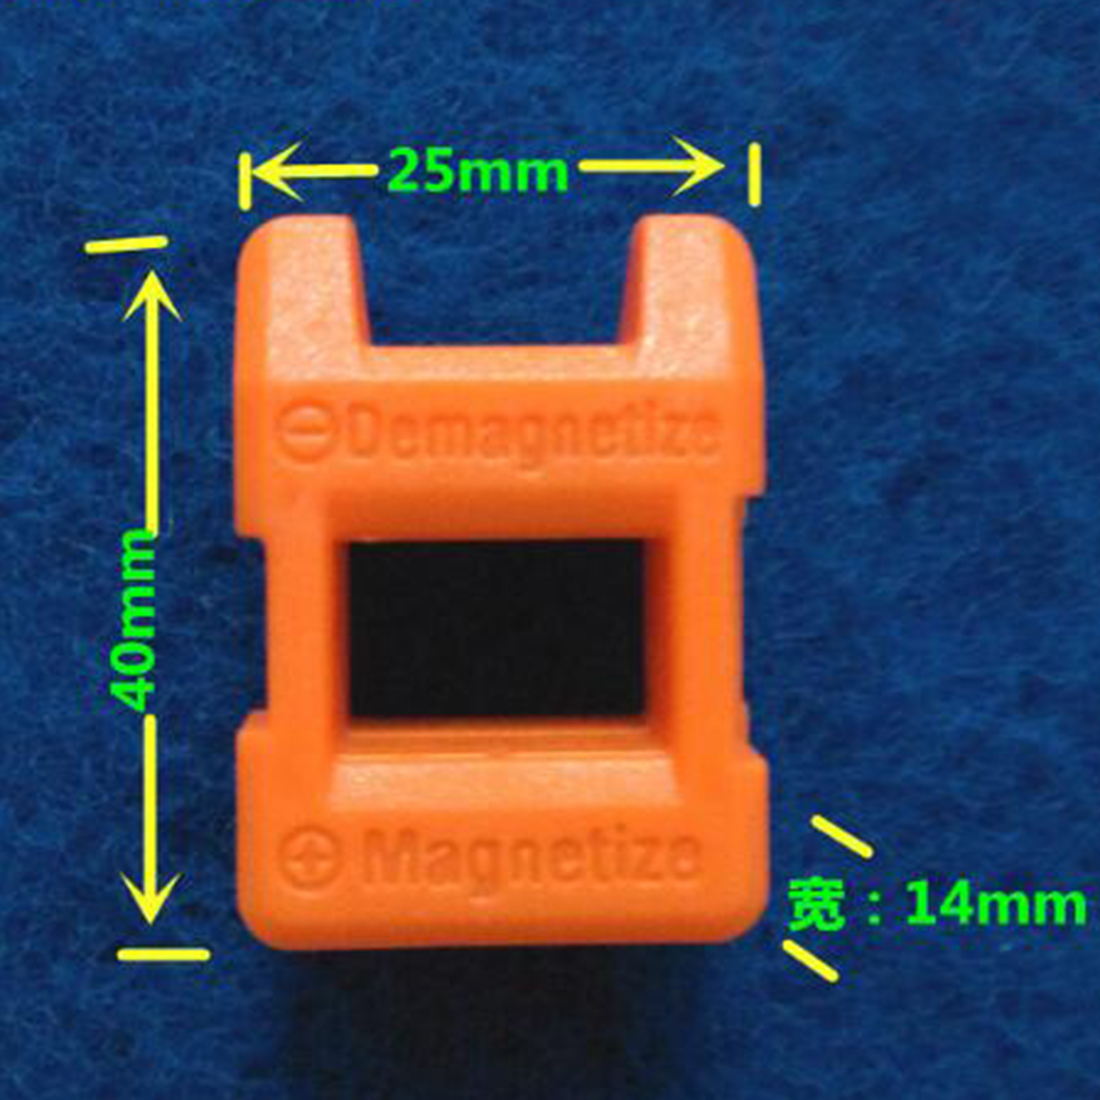 Mini - hurtig 2 in 1 magnetizer demagnetizer værktøj skruetrækker magnetisk farve send tilfældig